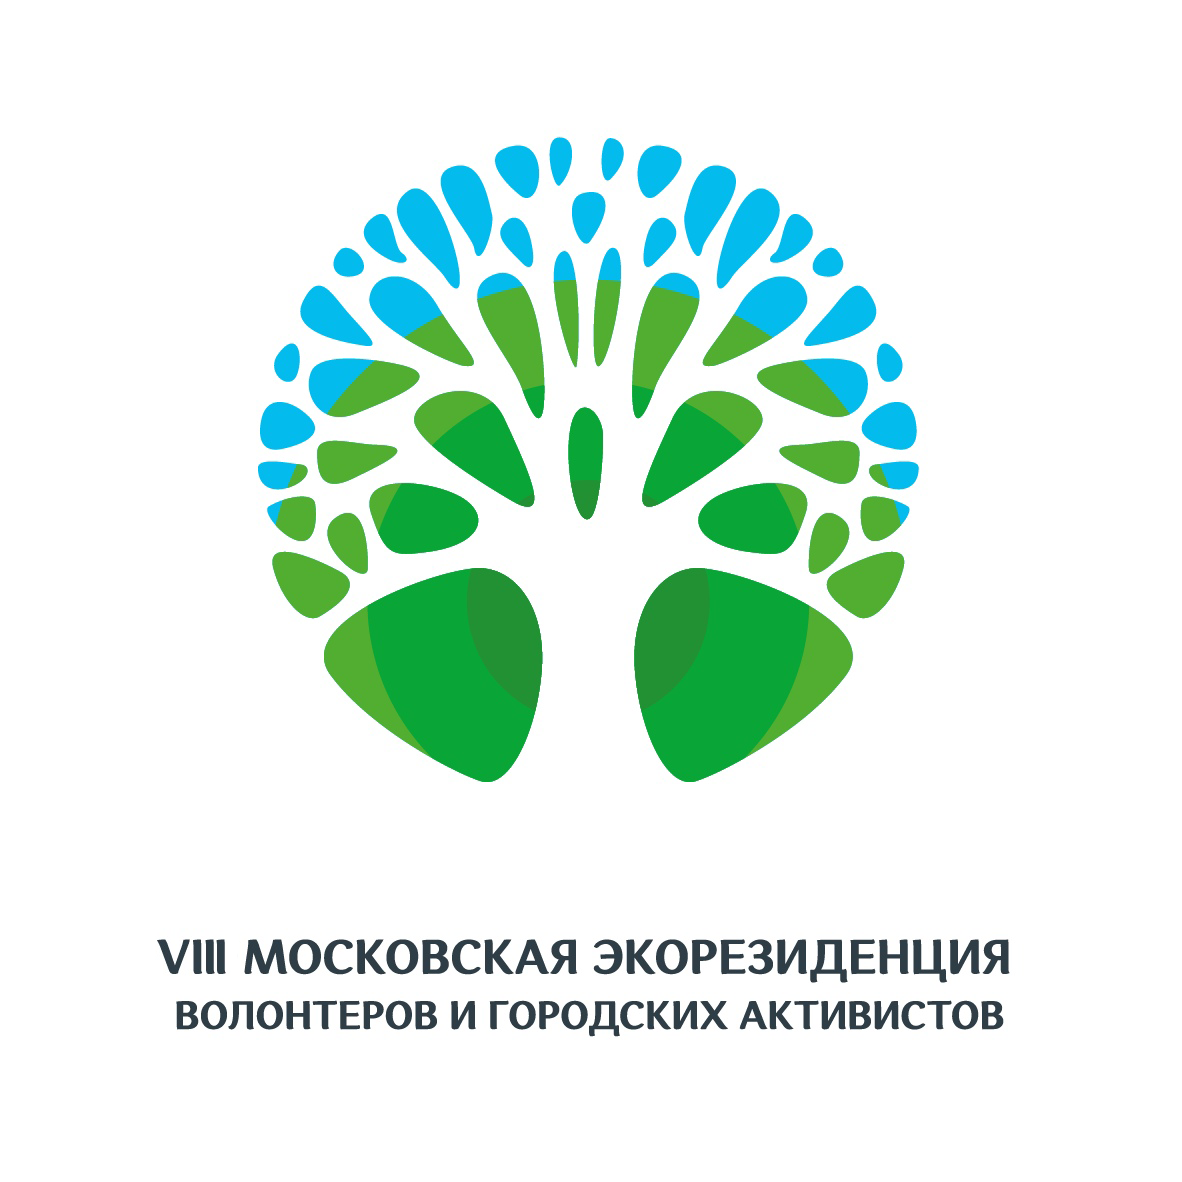 Восьмой фестиваль «Московская экорезиденция волонтеров и городских активистов» пройдет 6 декабря online - фото 1